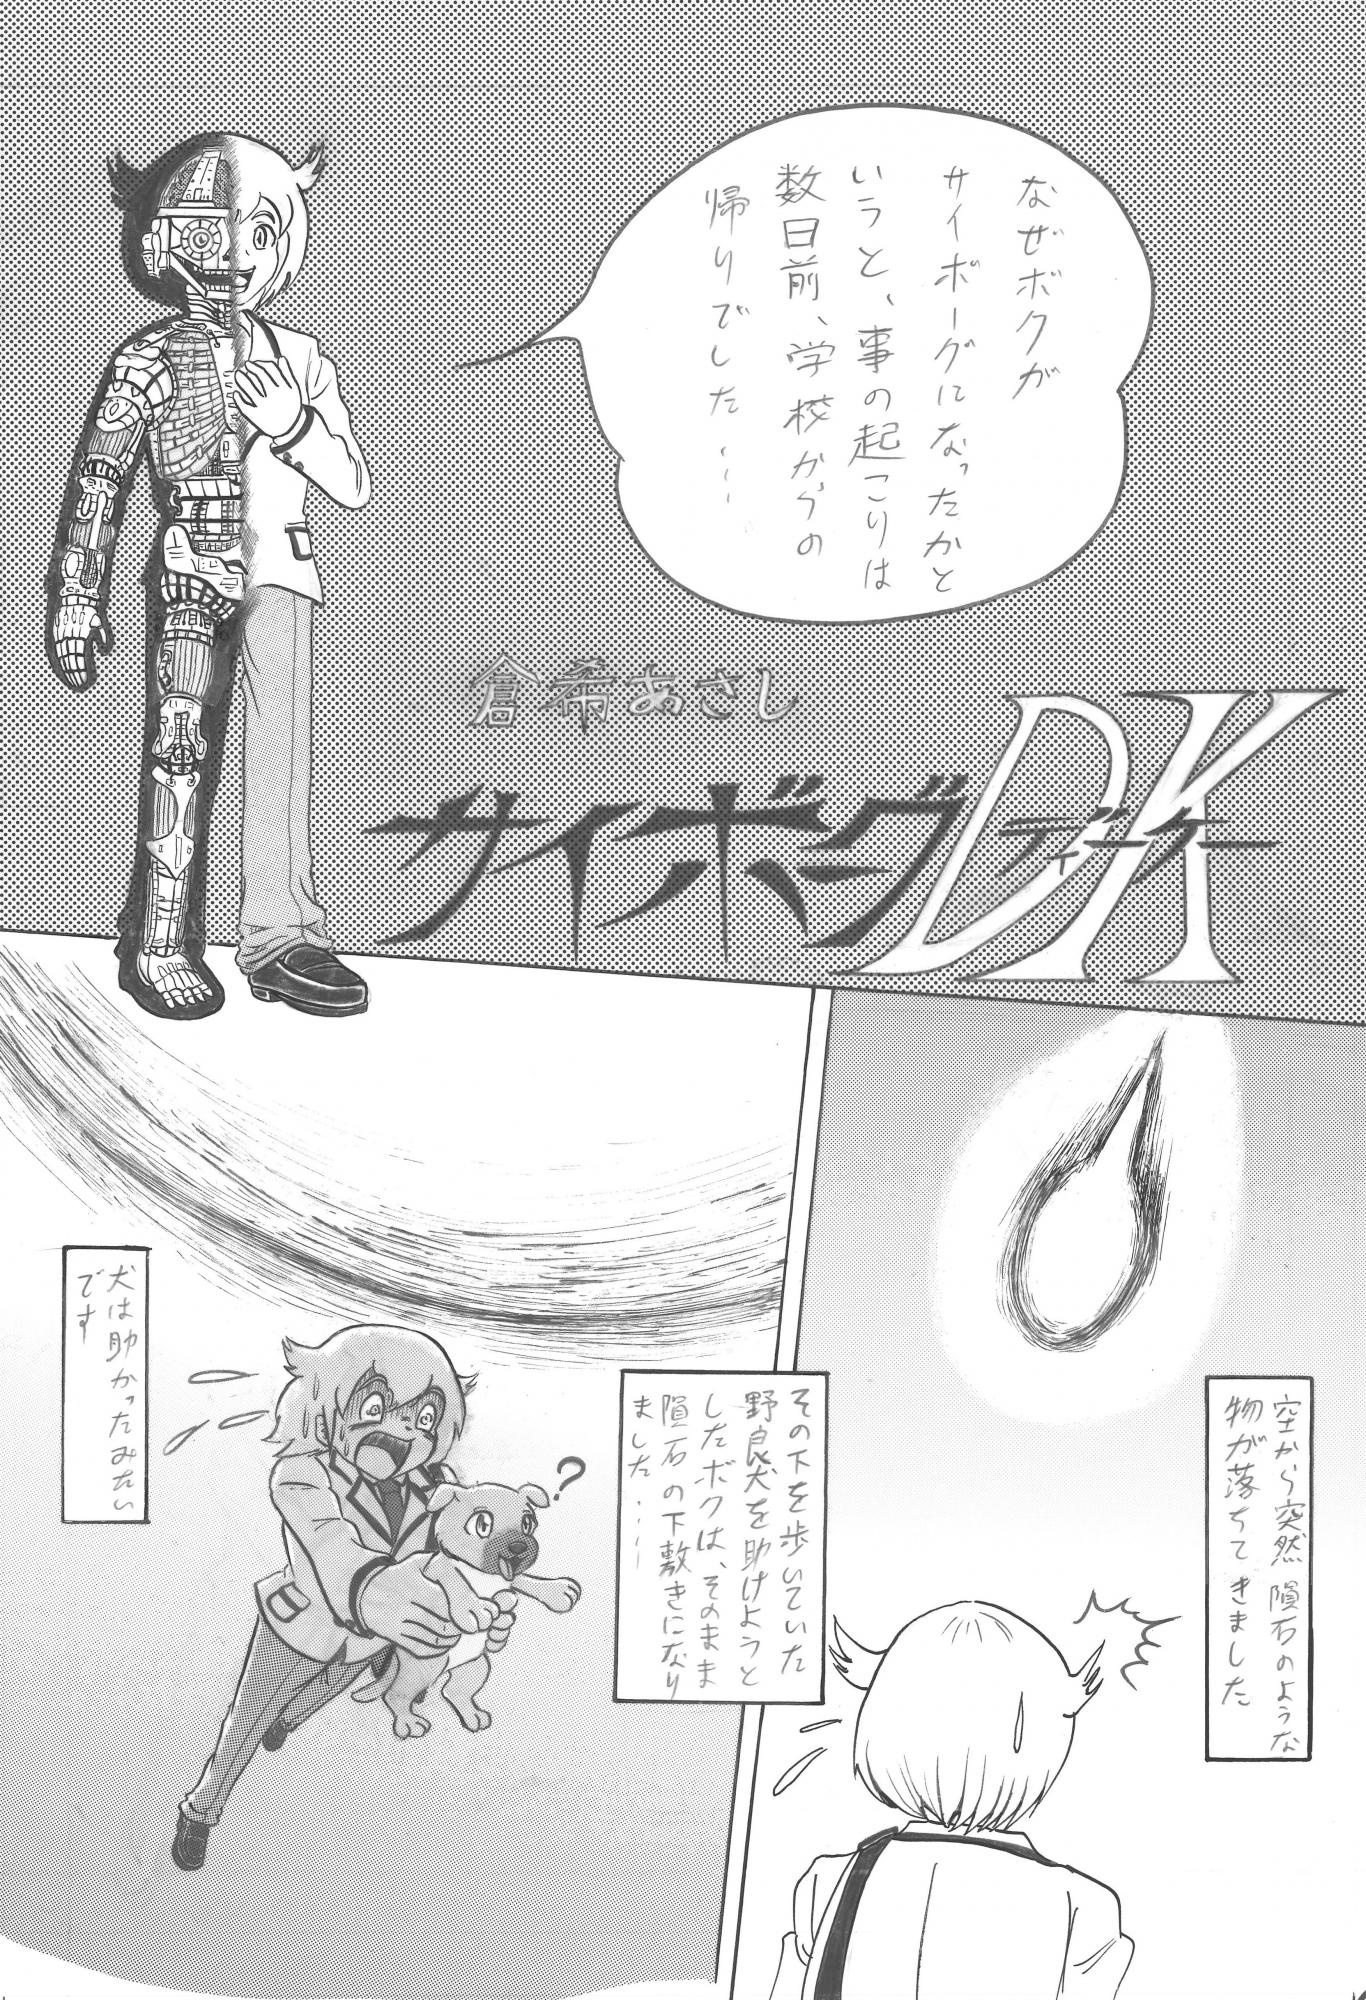 ストーリー漫画の部・一般大賞作品「サイボーグＤＫ」倉希あさしさん